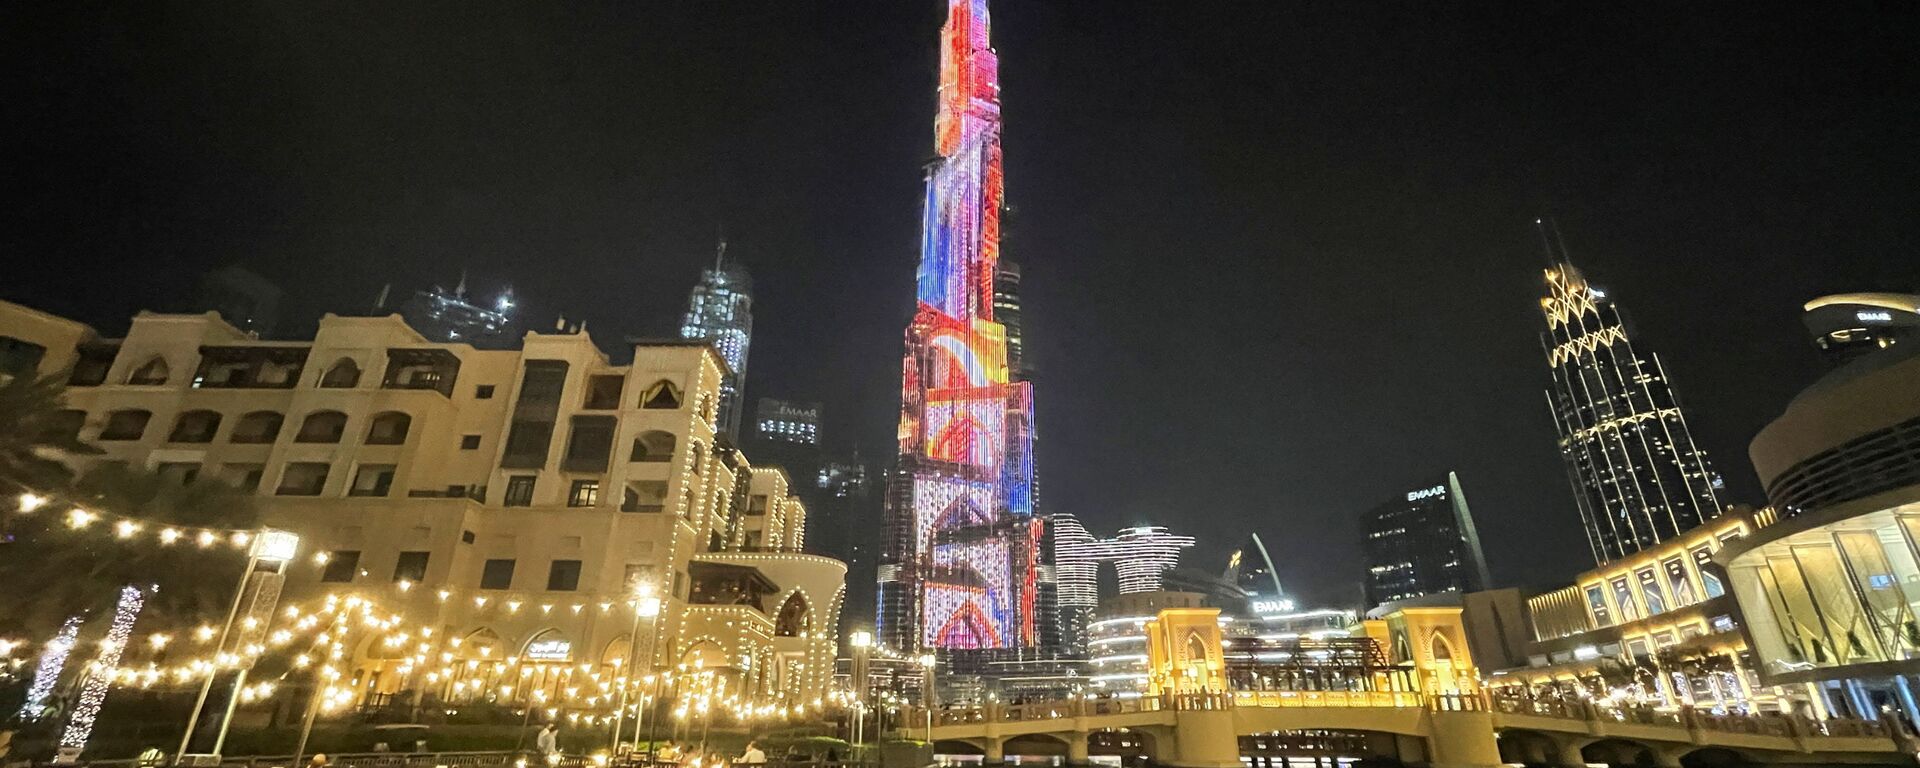 برج خليفة بالتزامن مع إطلاق معرض إكسبو 2020 دبي، 30 سبتمبر/ أيلول 2021 - سبوتنيك عربي, 1920, 30.09.2021